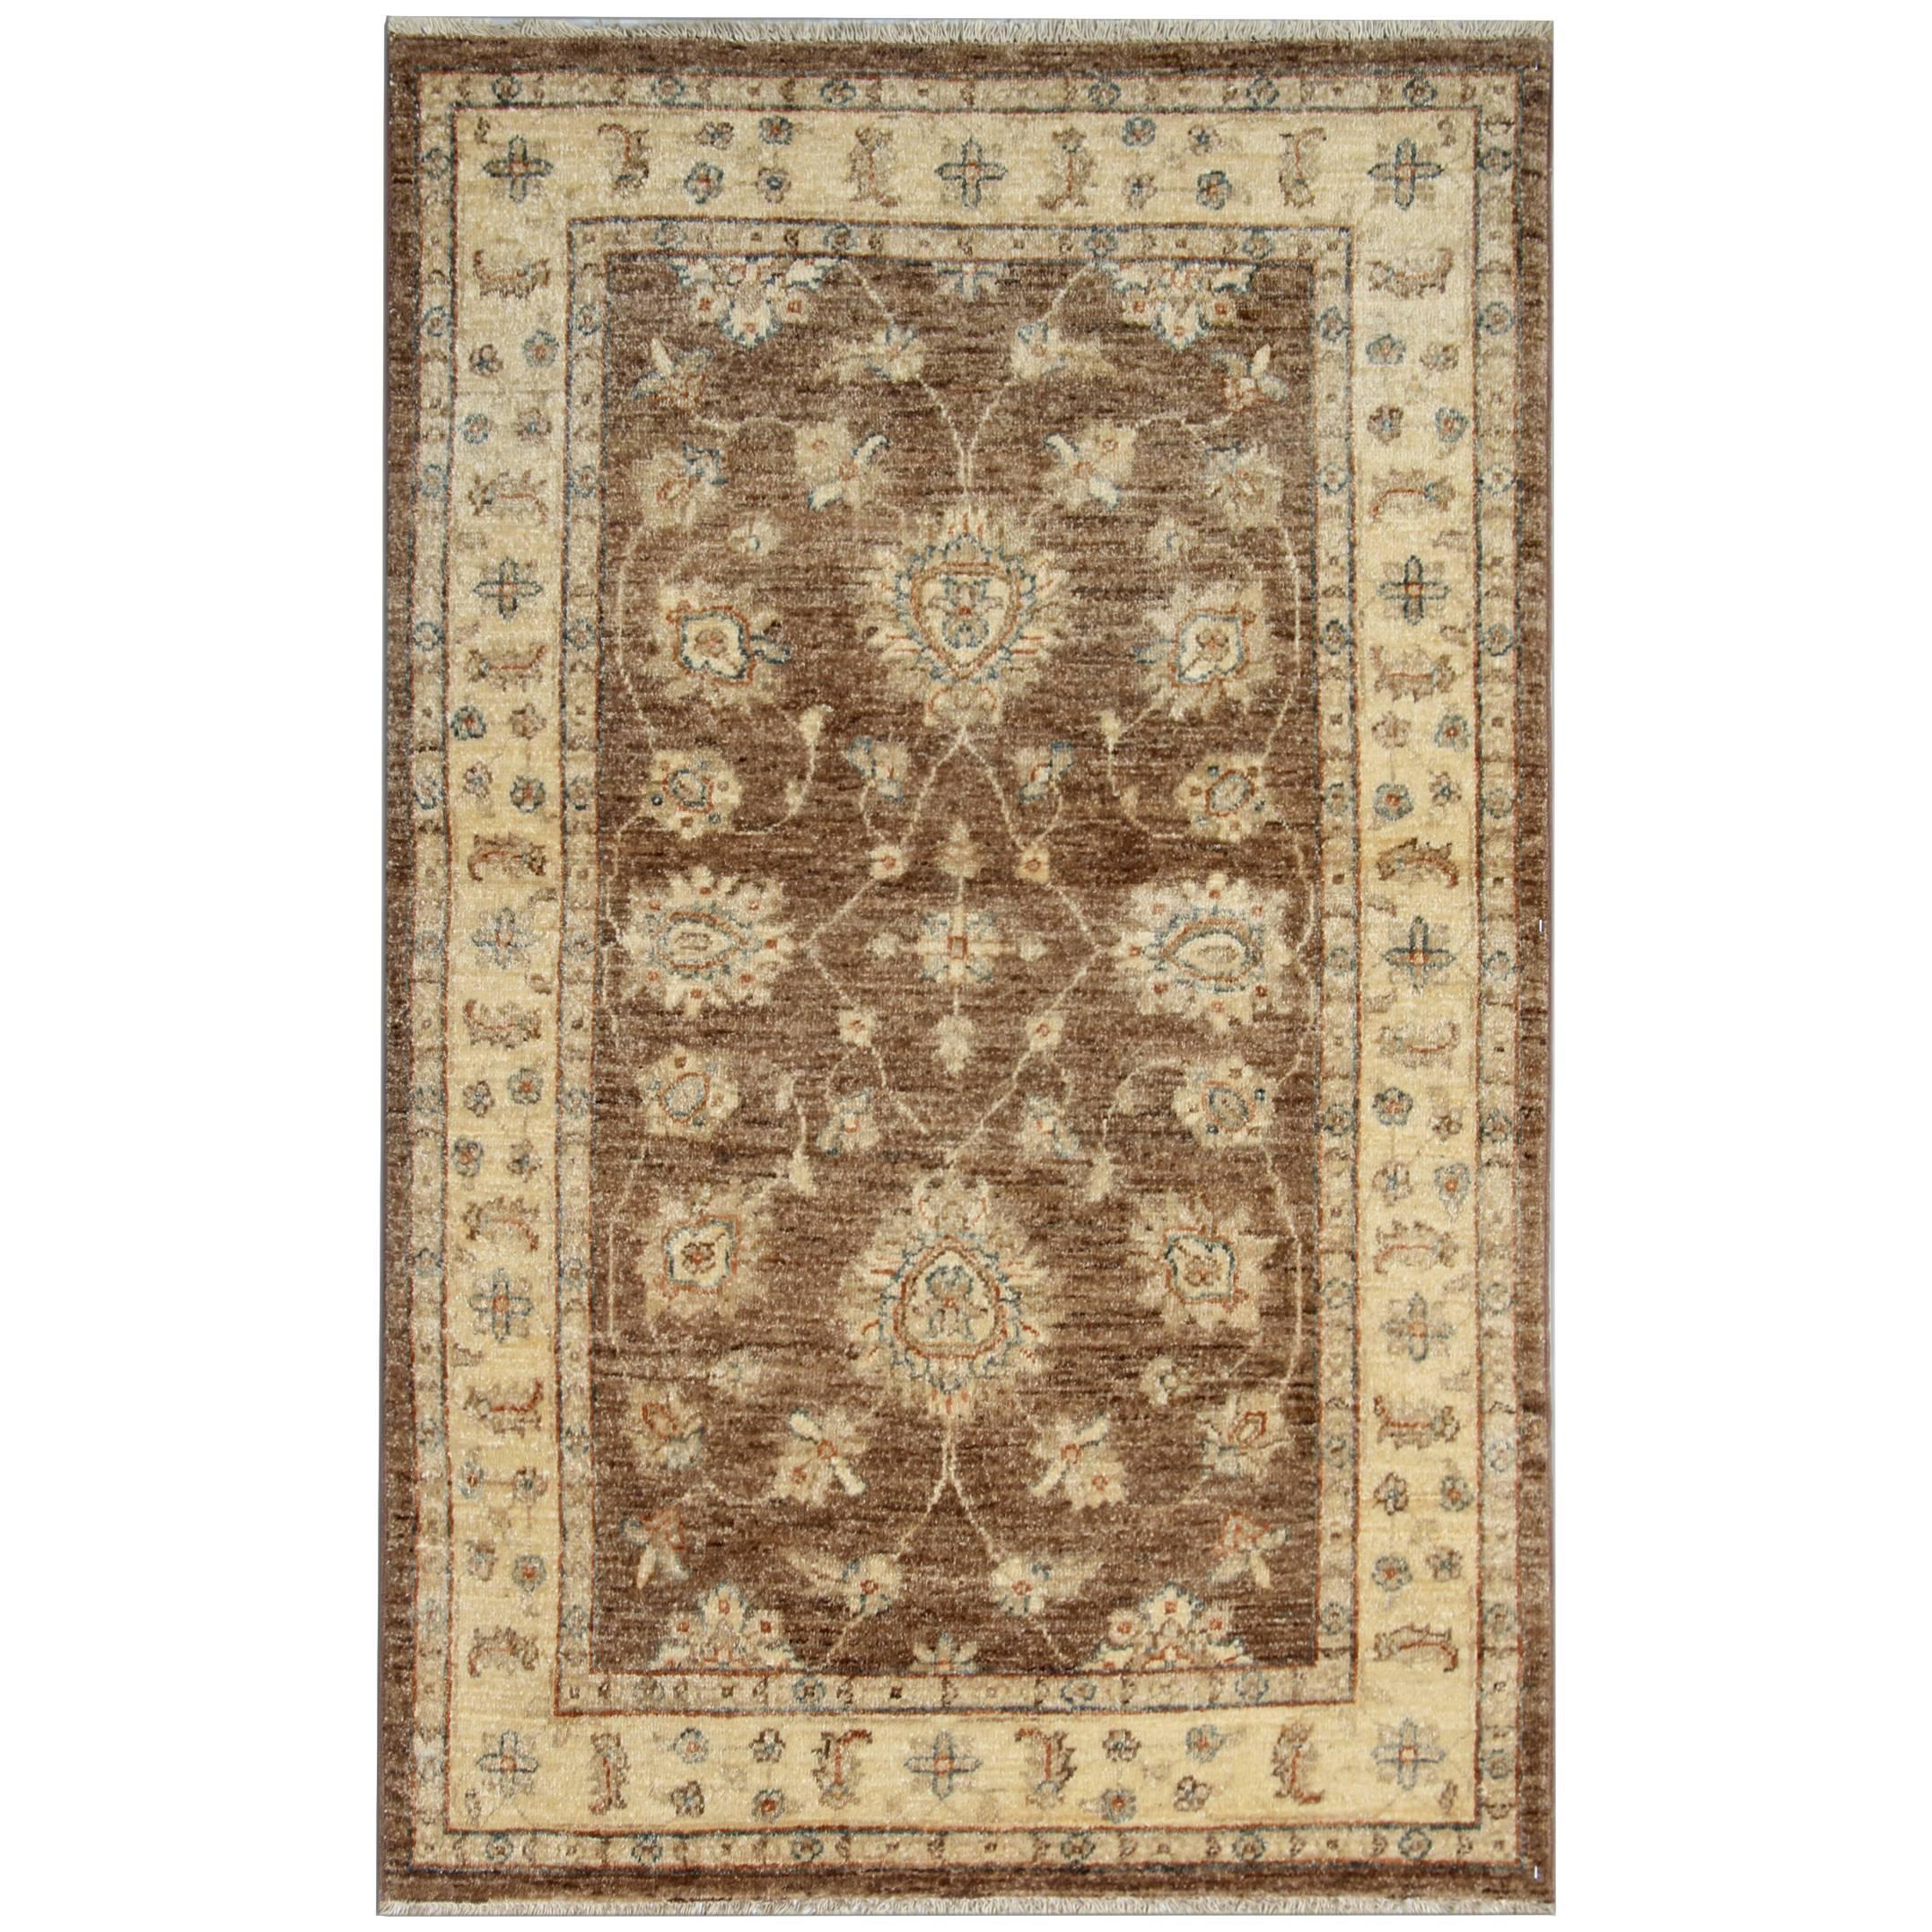 Brauner brauner Teppich, handgefertigt, Wohnzimmerteppiche, mit orientalischem Teppichdesign